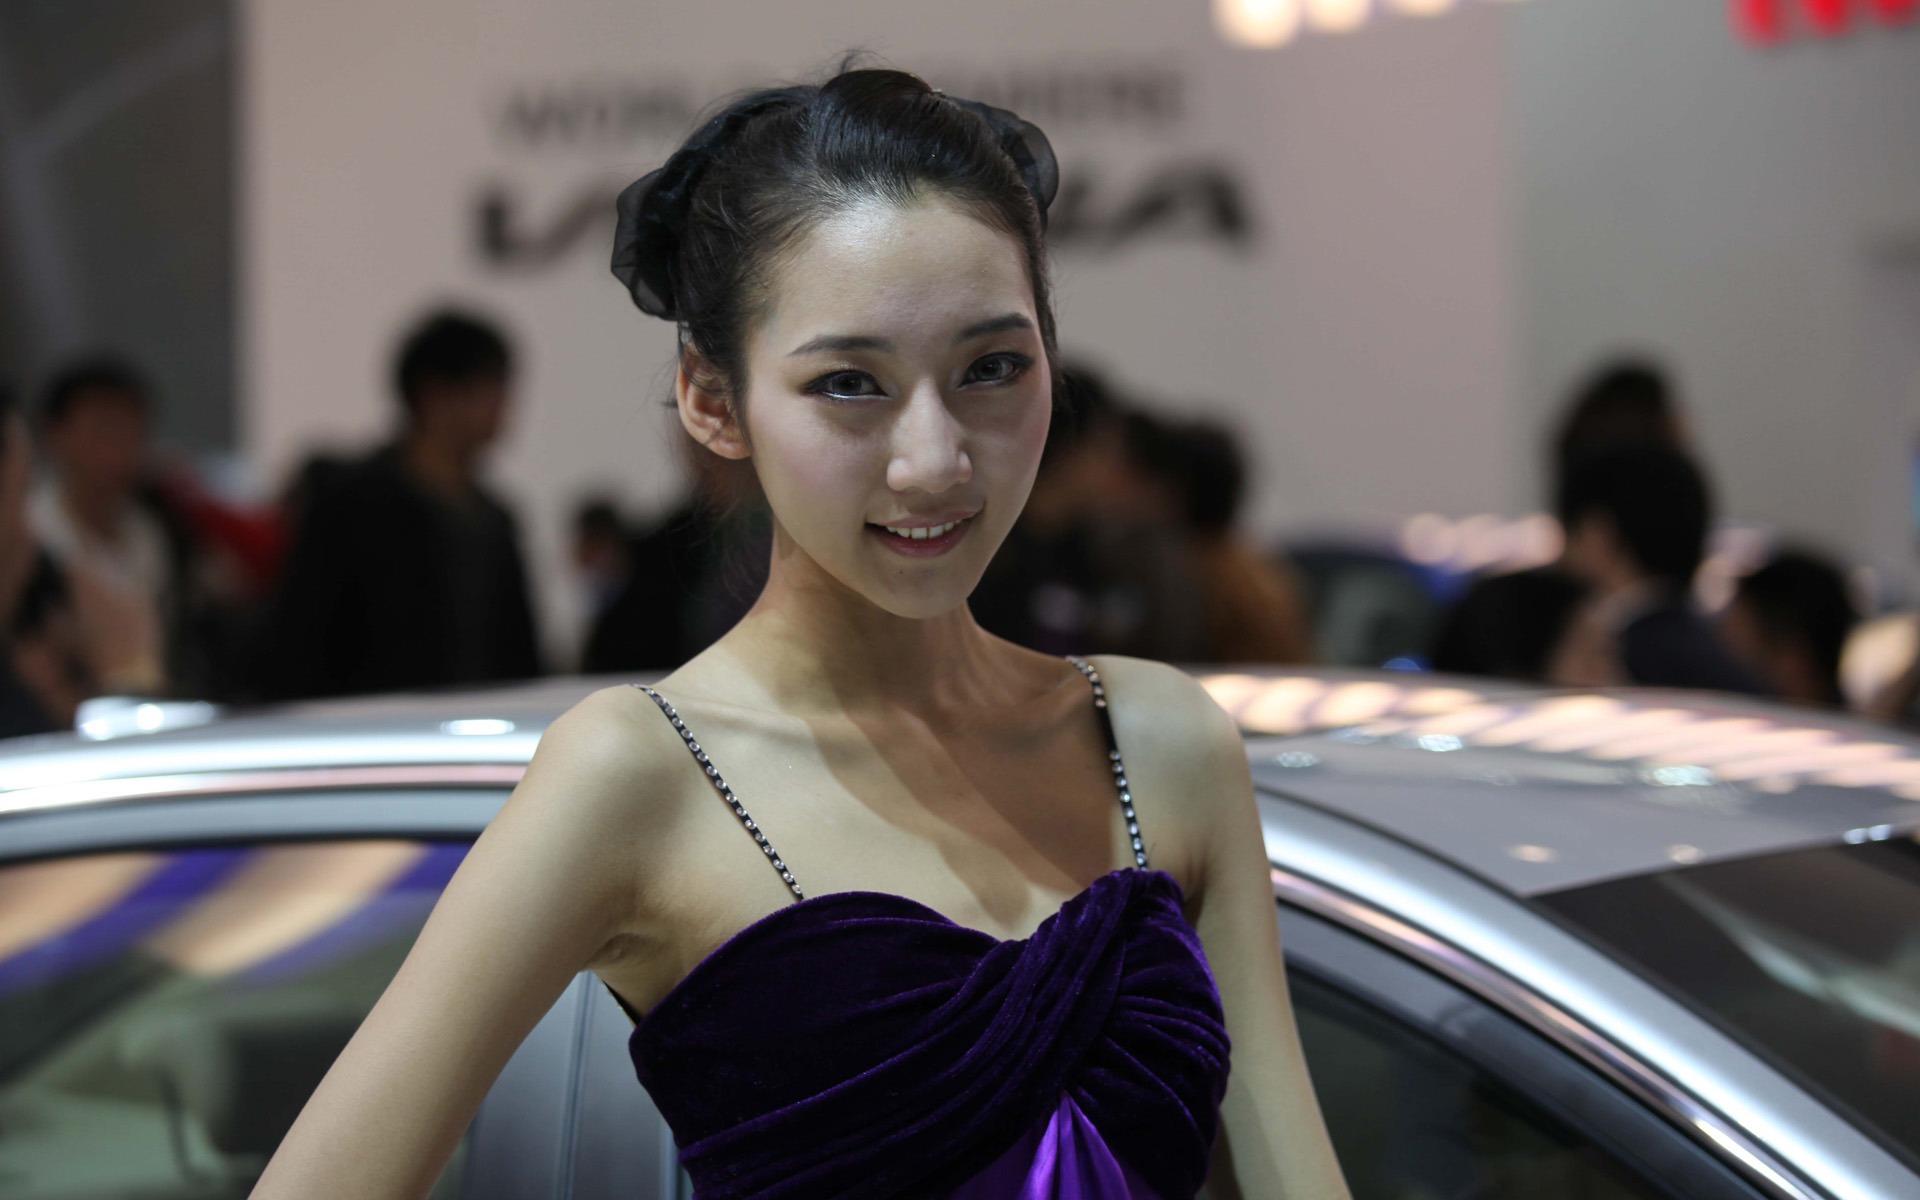 2010 v Pekingu Mezinárodním autosalonu krása (1) (vítr honí mraky práce) #21 - 1920x1200